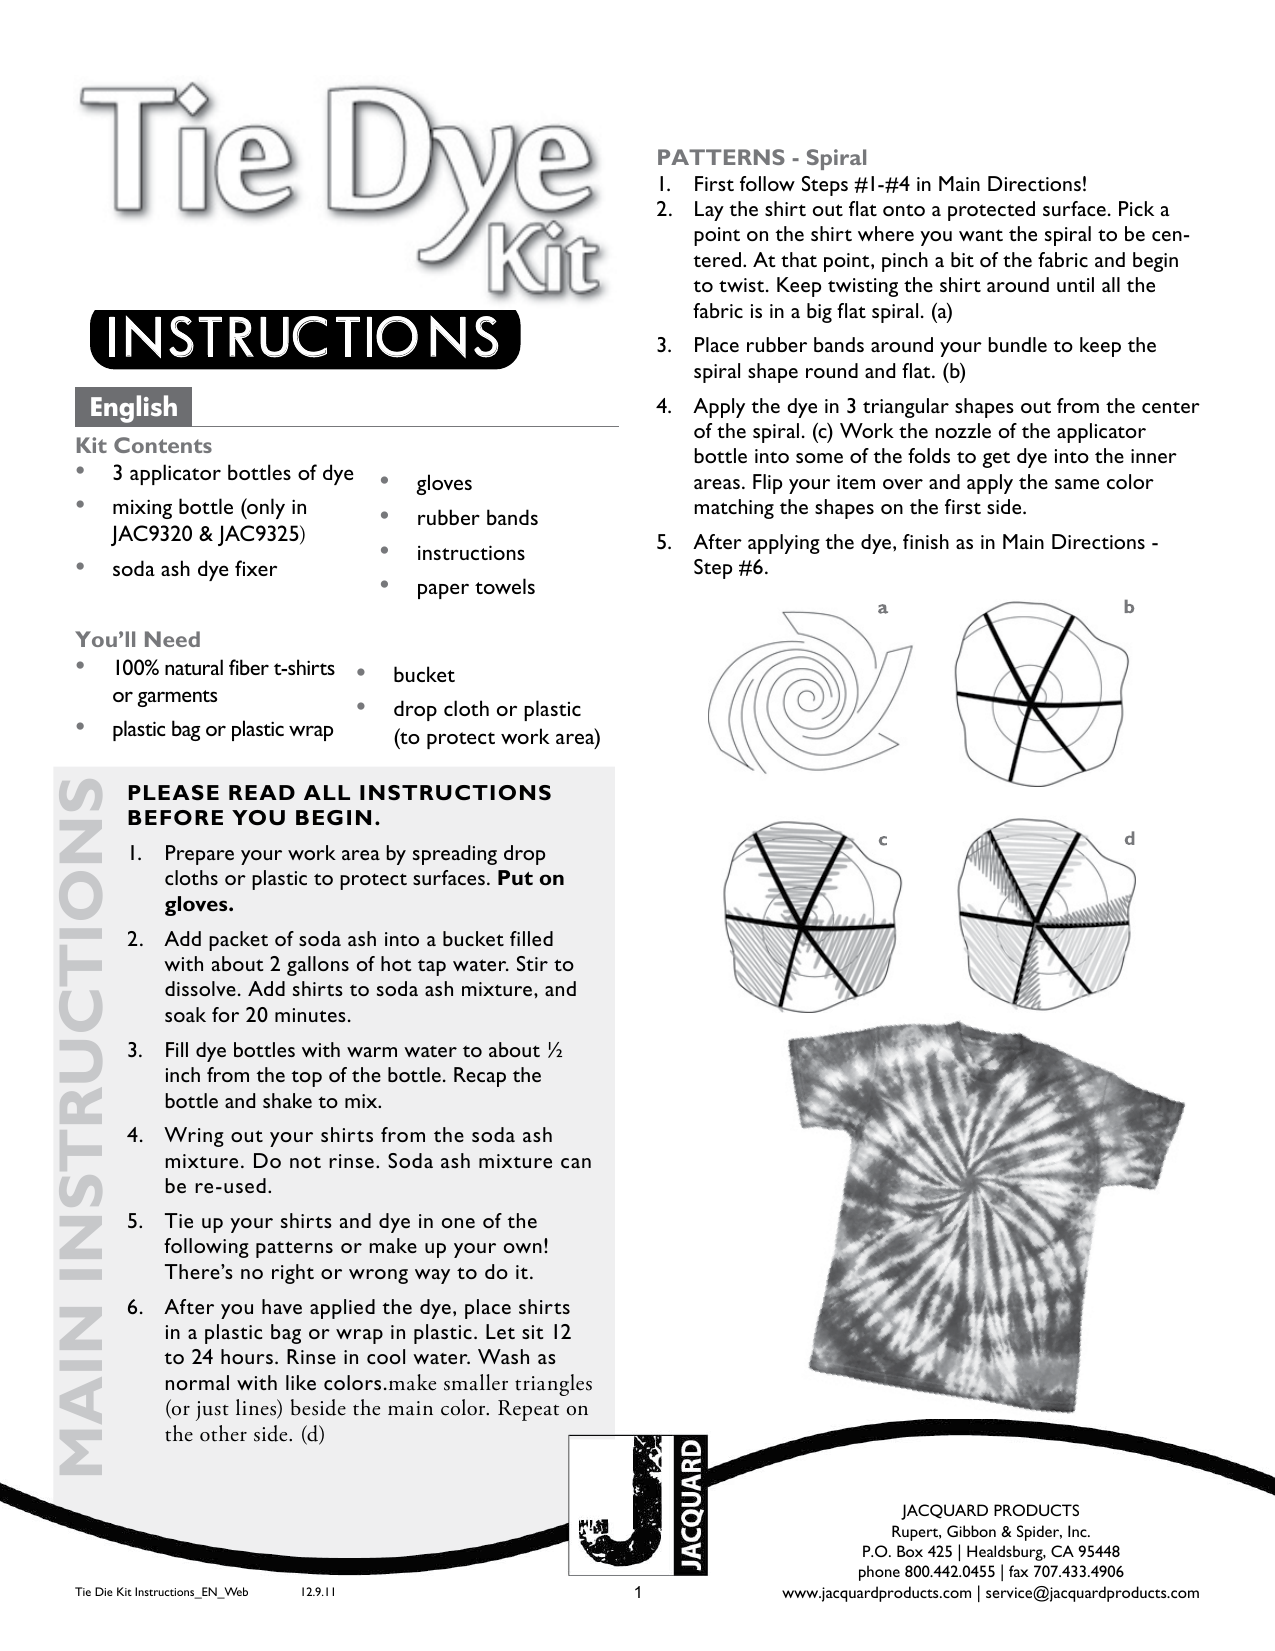 Tie Dye Kit Instructions